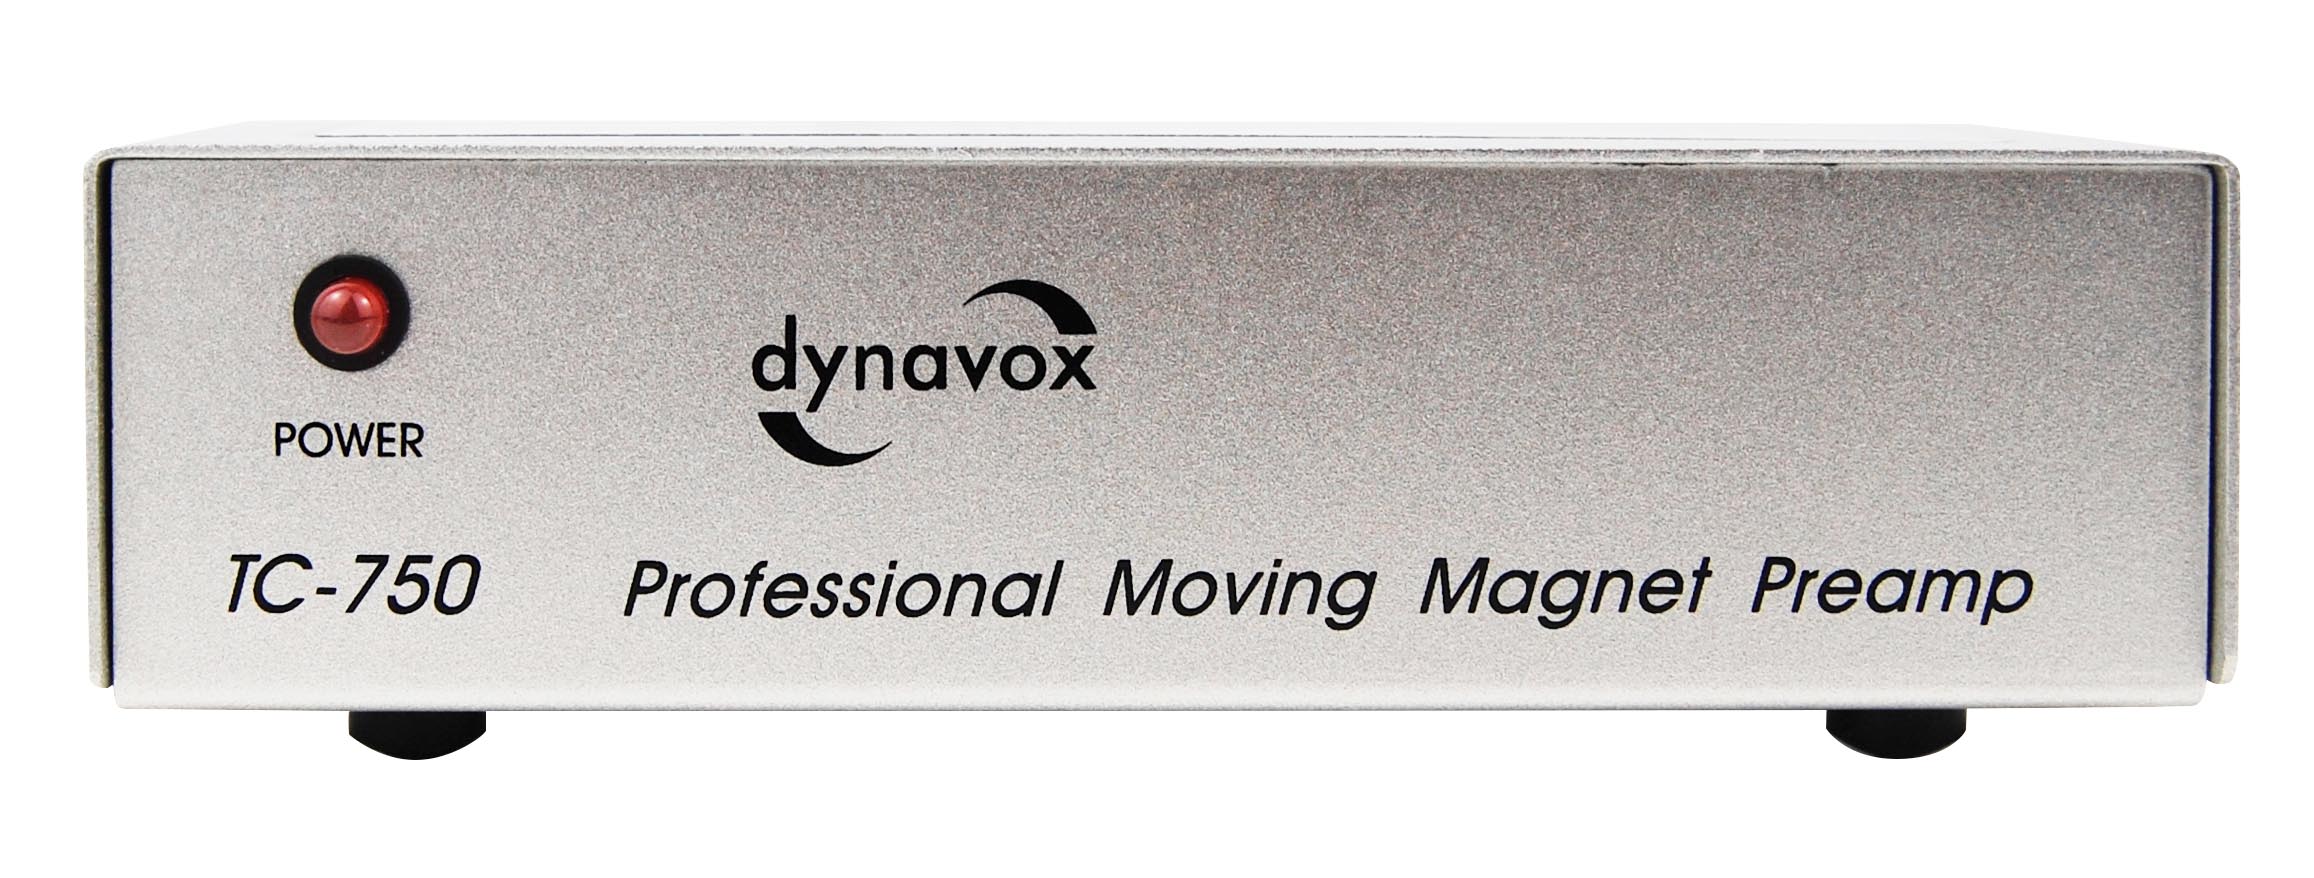 Einfach aber gut. Der Dynavox TC-750 mit ausgelagertem Netzteil passt in jedes Regal.